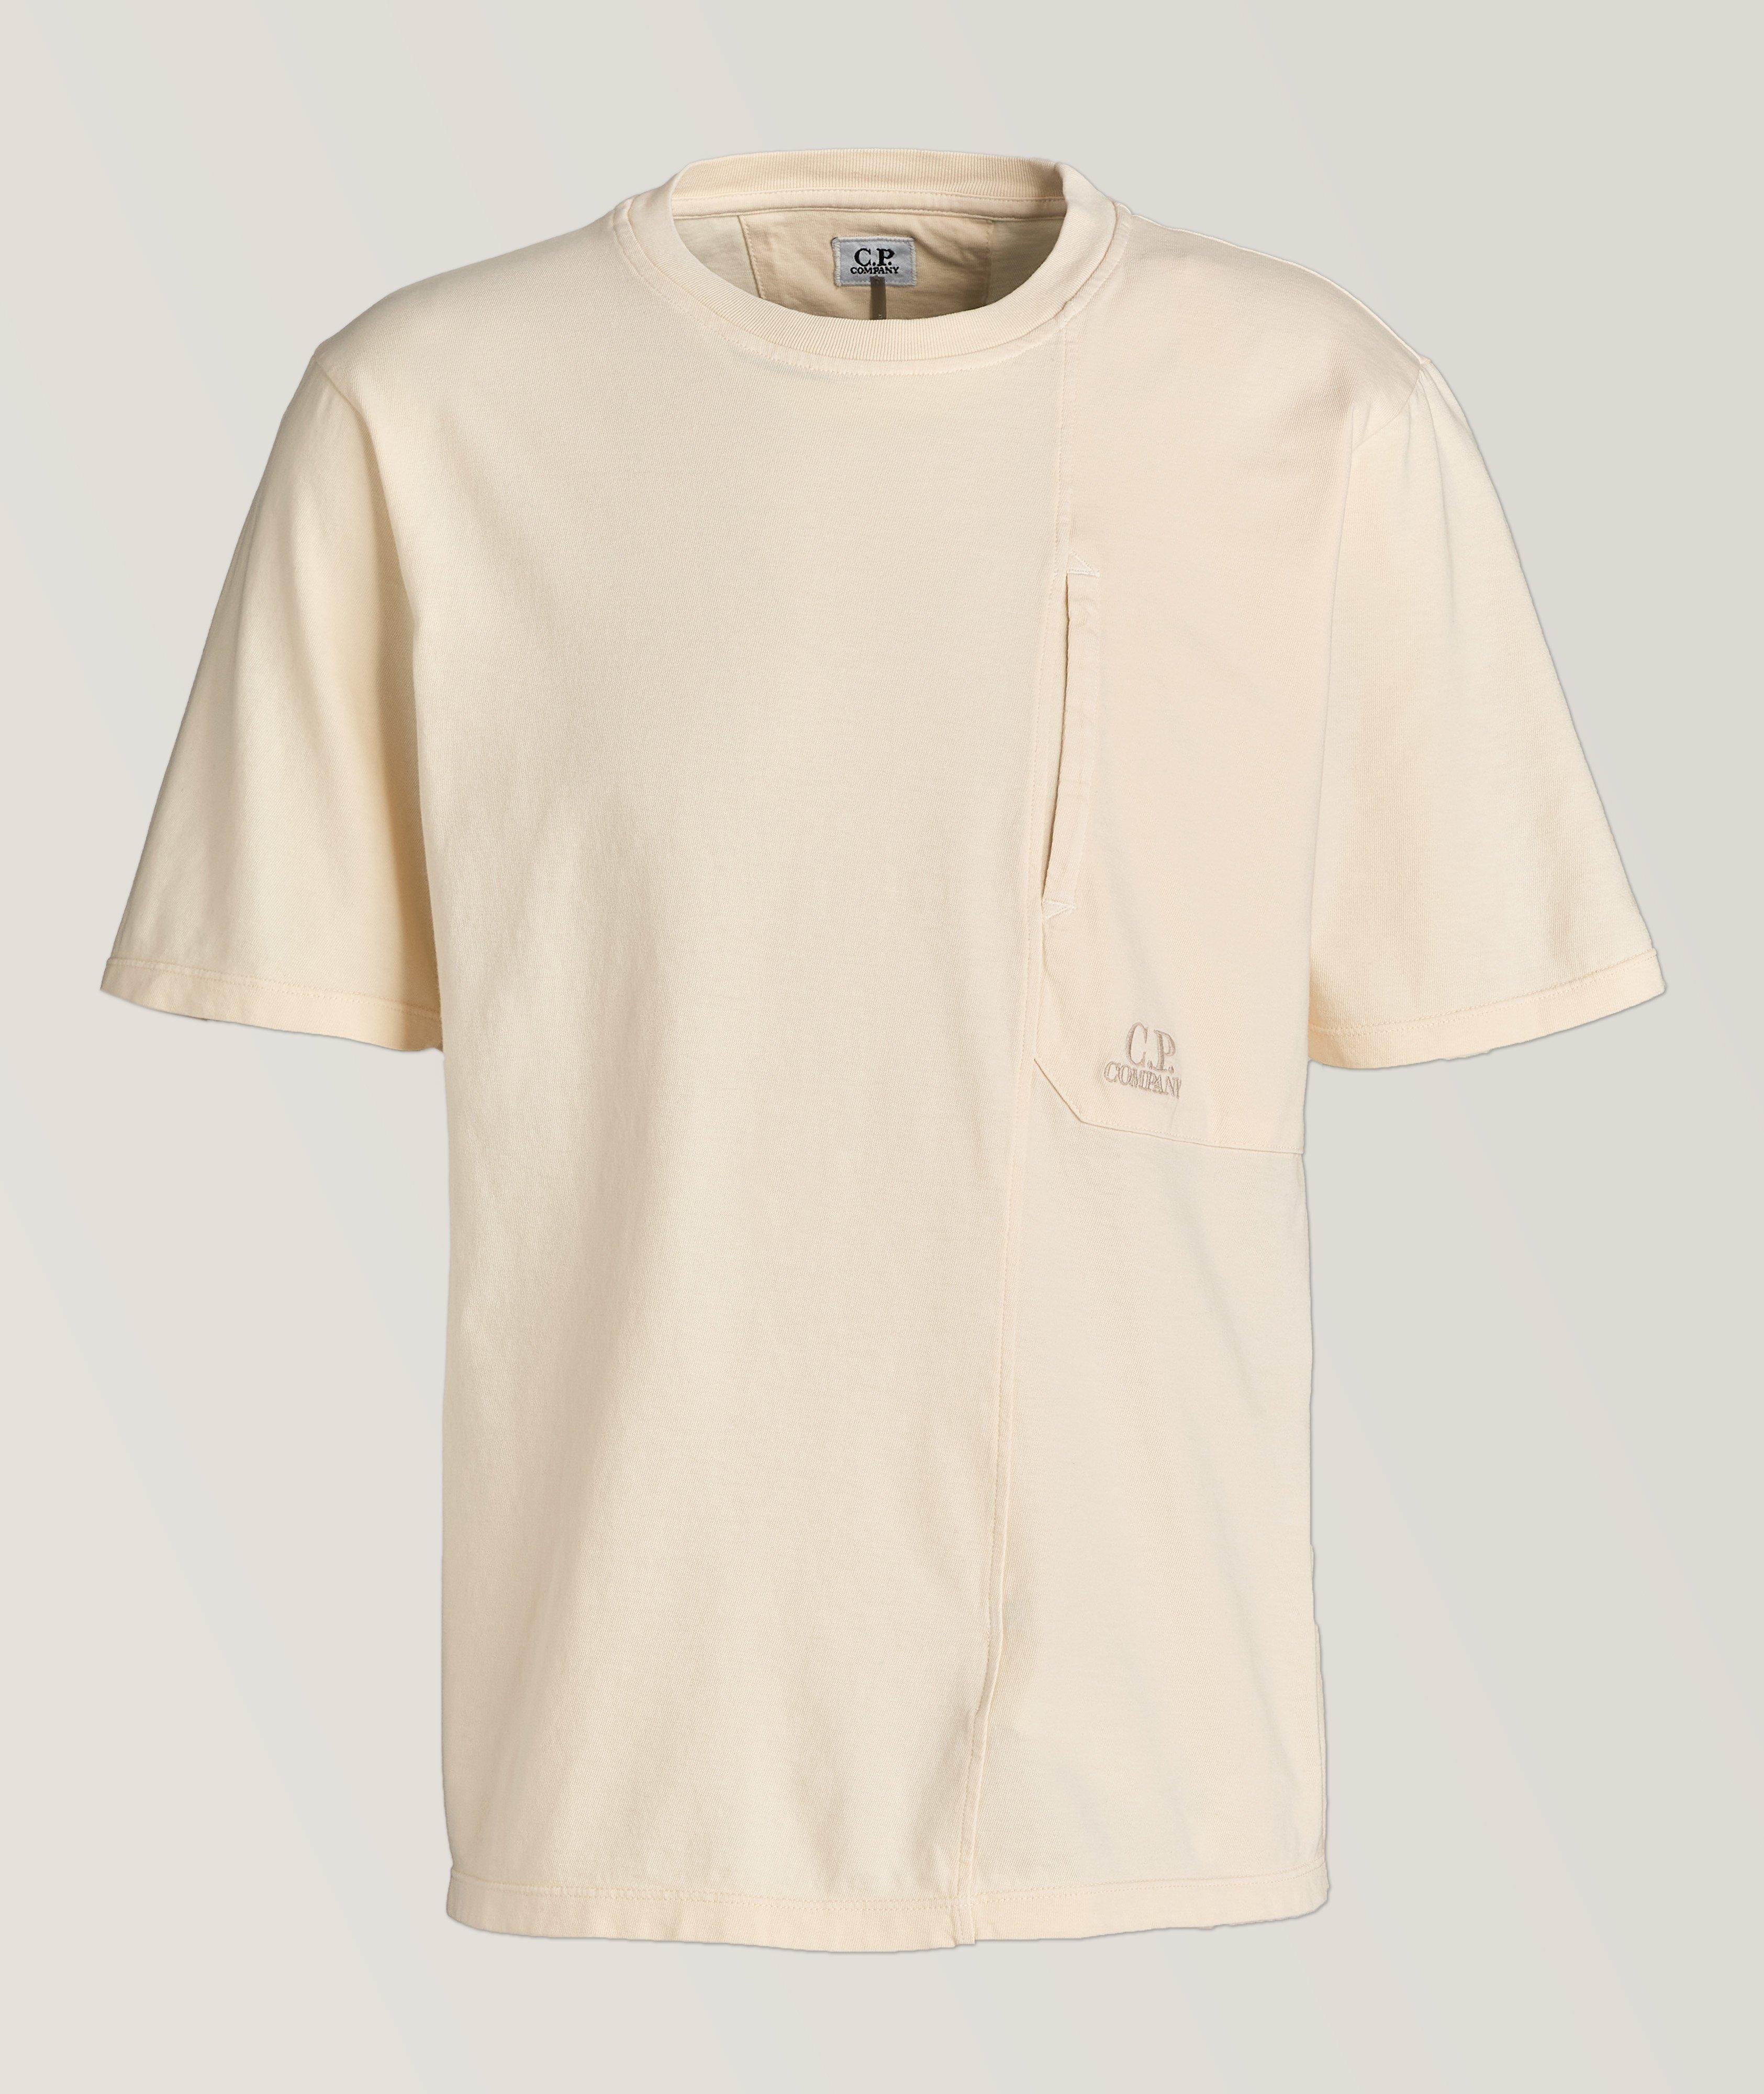 Patch Pocket Cotton T-Shirt image 0